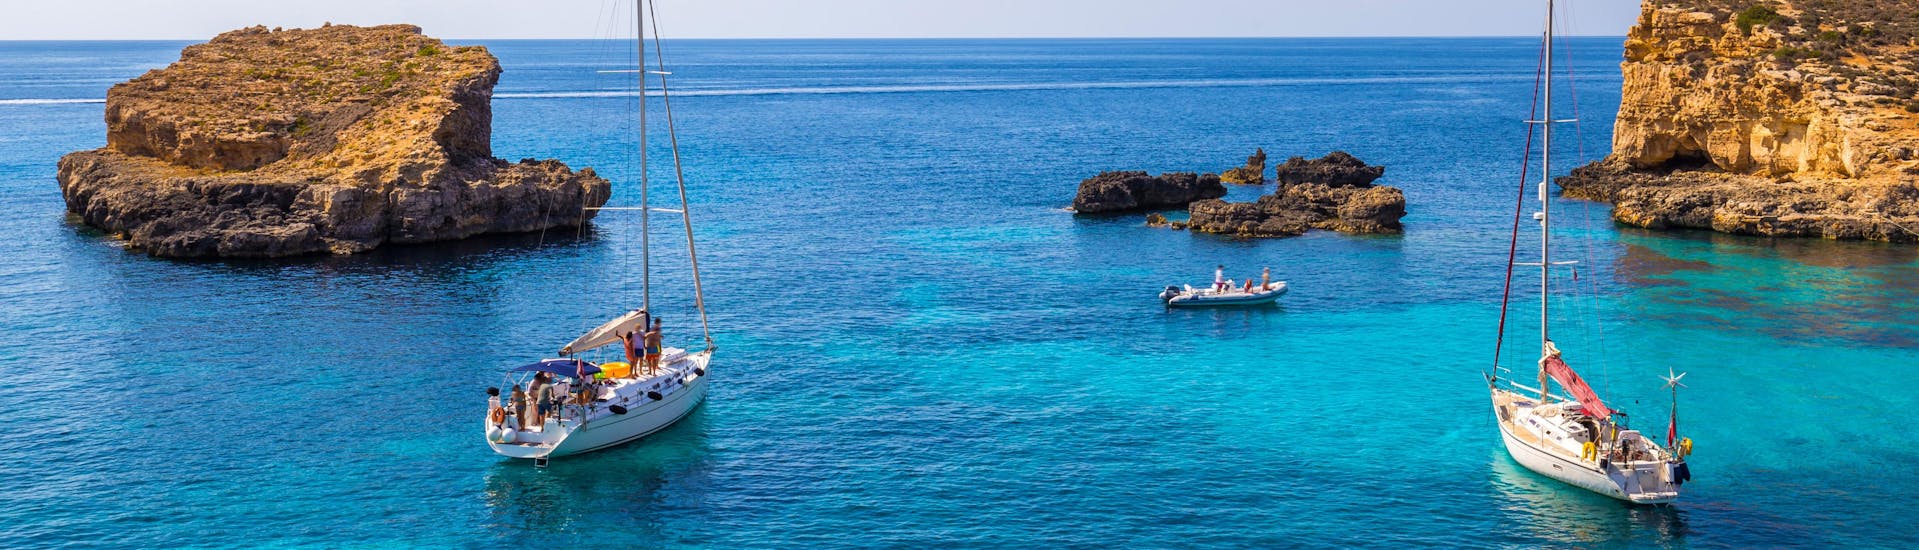 Eine Freundesgruppe macht eine Bootstour in der Urlaubsregion Blue Lagoon Malta.